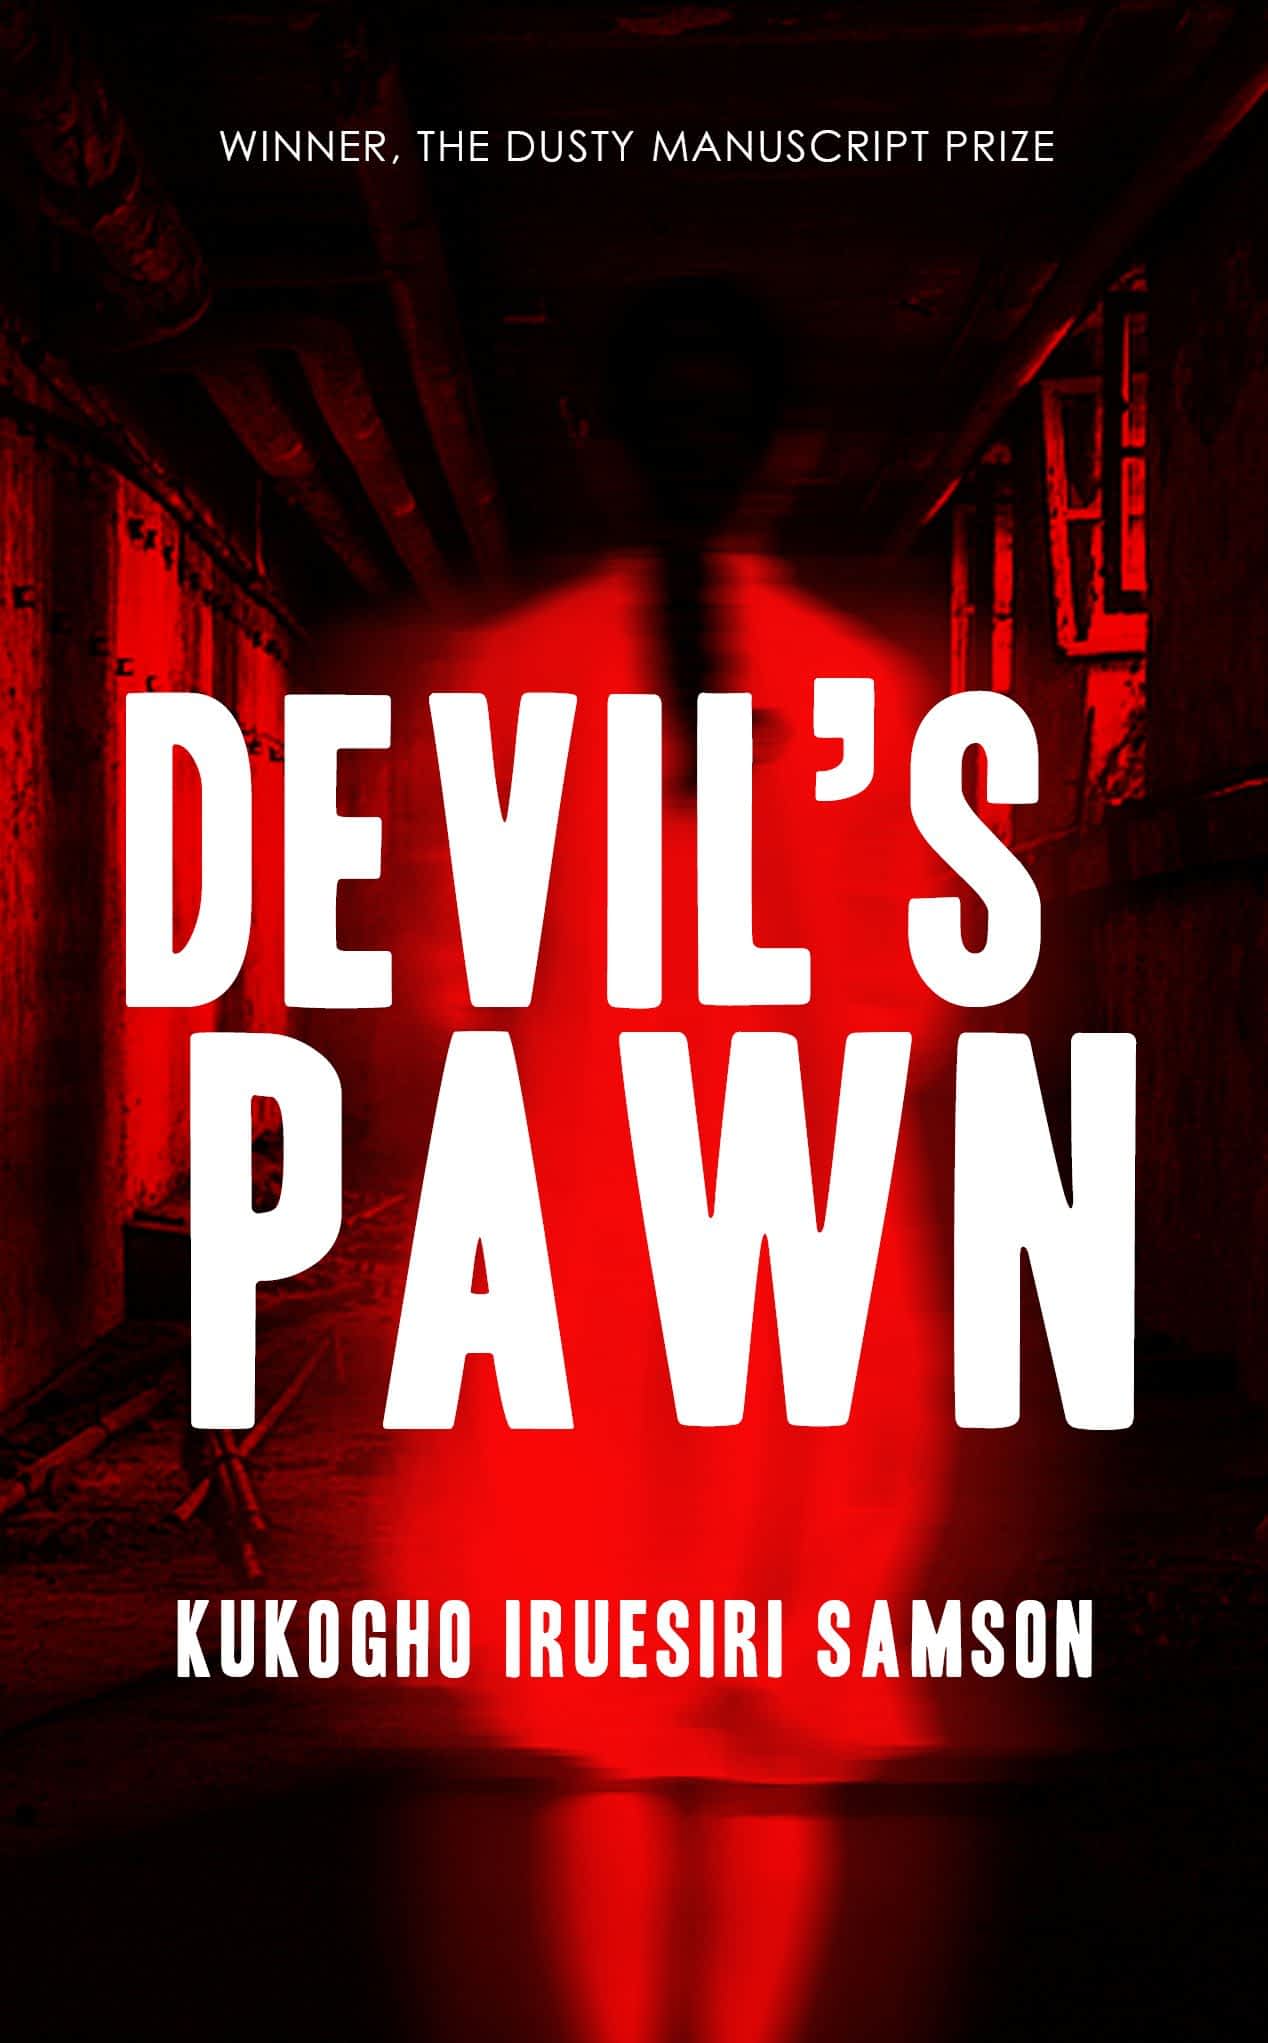 Devil's Pawn (The Devil's Pawn Duet)